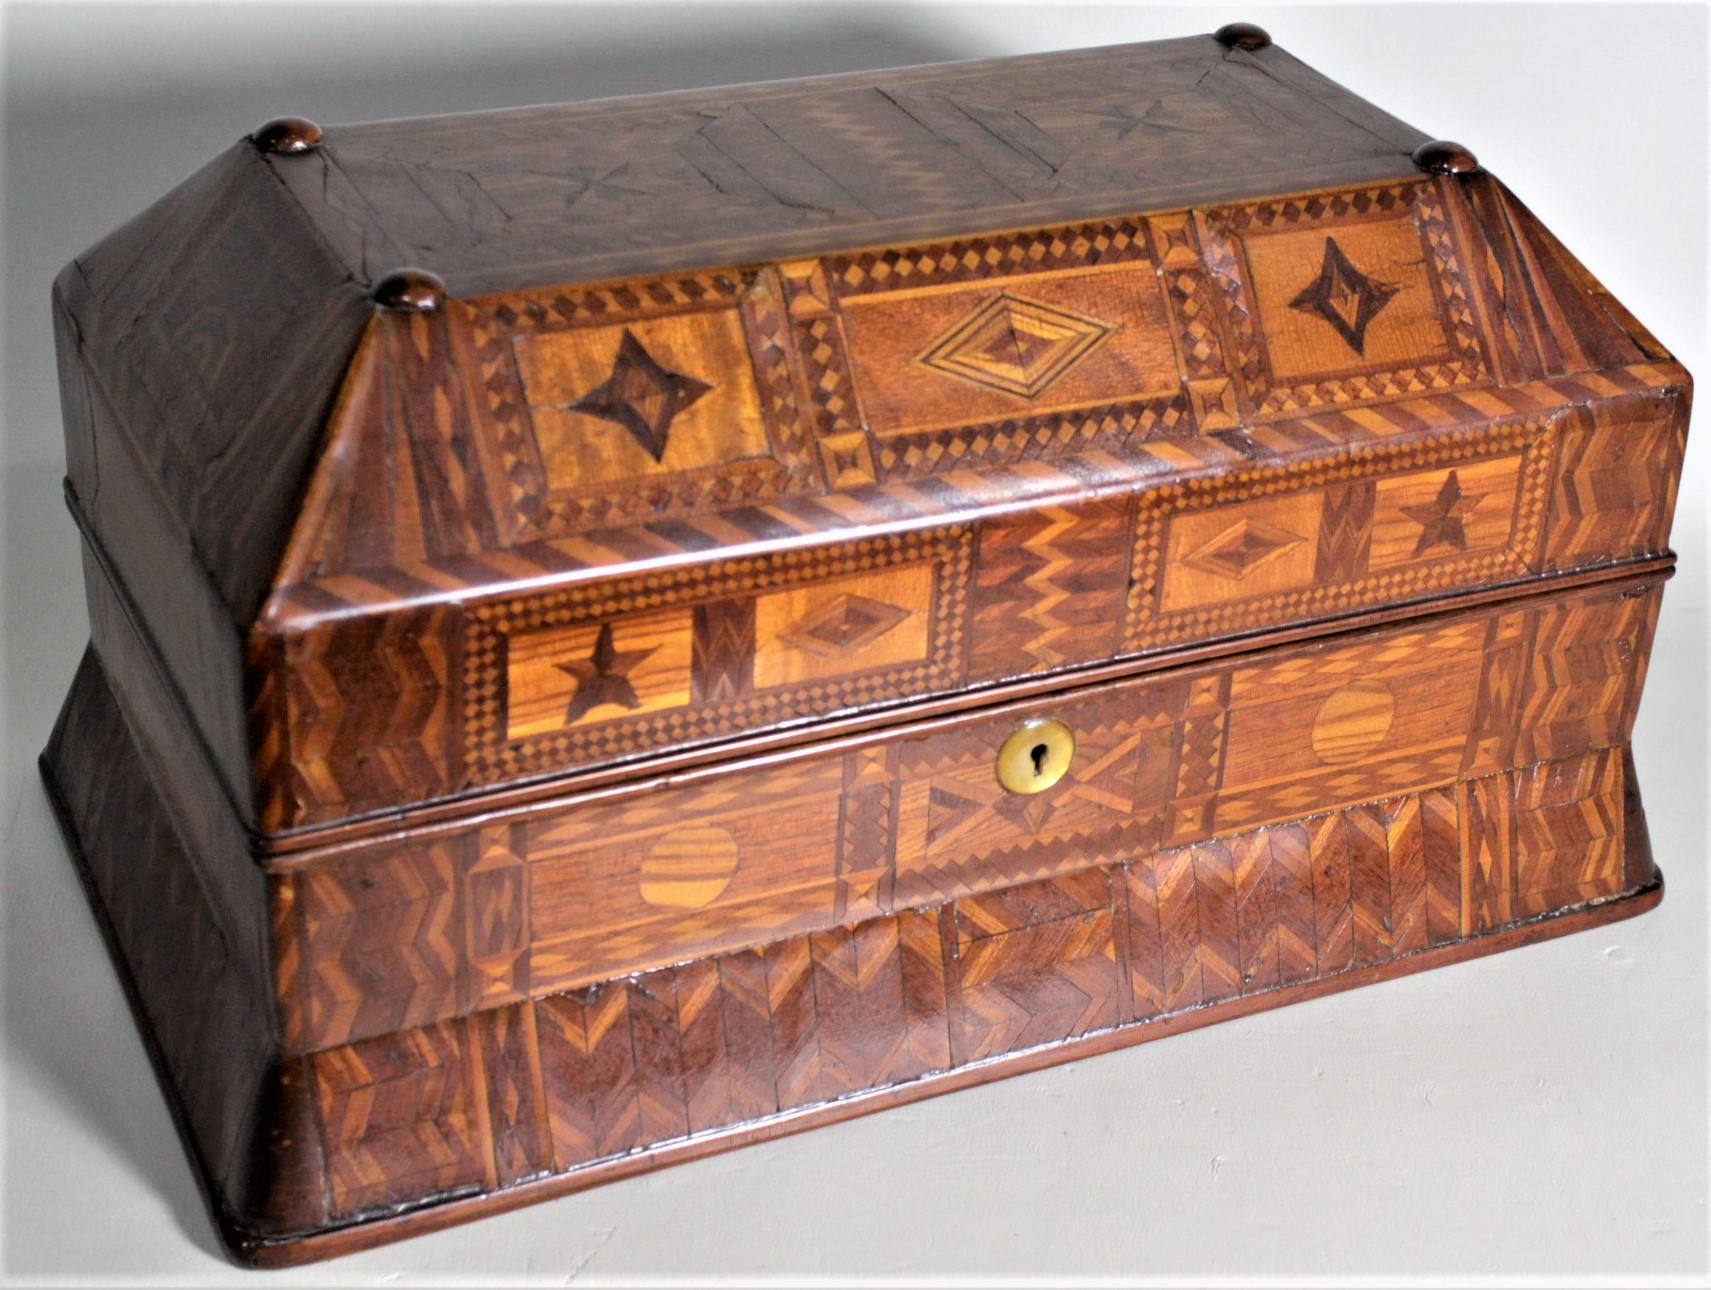 Cette exquise boîte à écrire en parquet ancien n'est pas signée, mais on présume qu'elle a été fabriquée au Canada vers 1900 dans un style Folk Art. La boîte elle-même, y compris l'intérieur, est entièrement et magistralement fabriquée à la main,